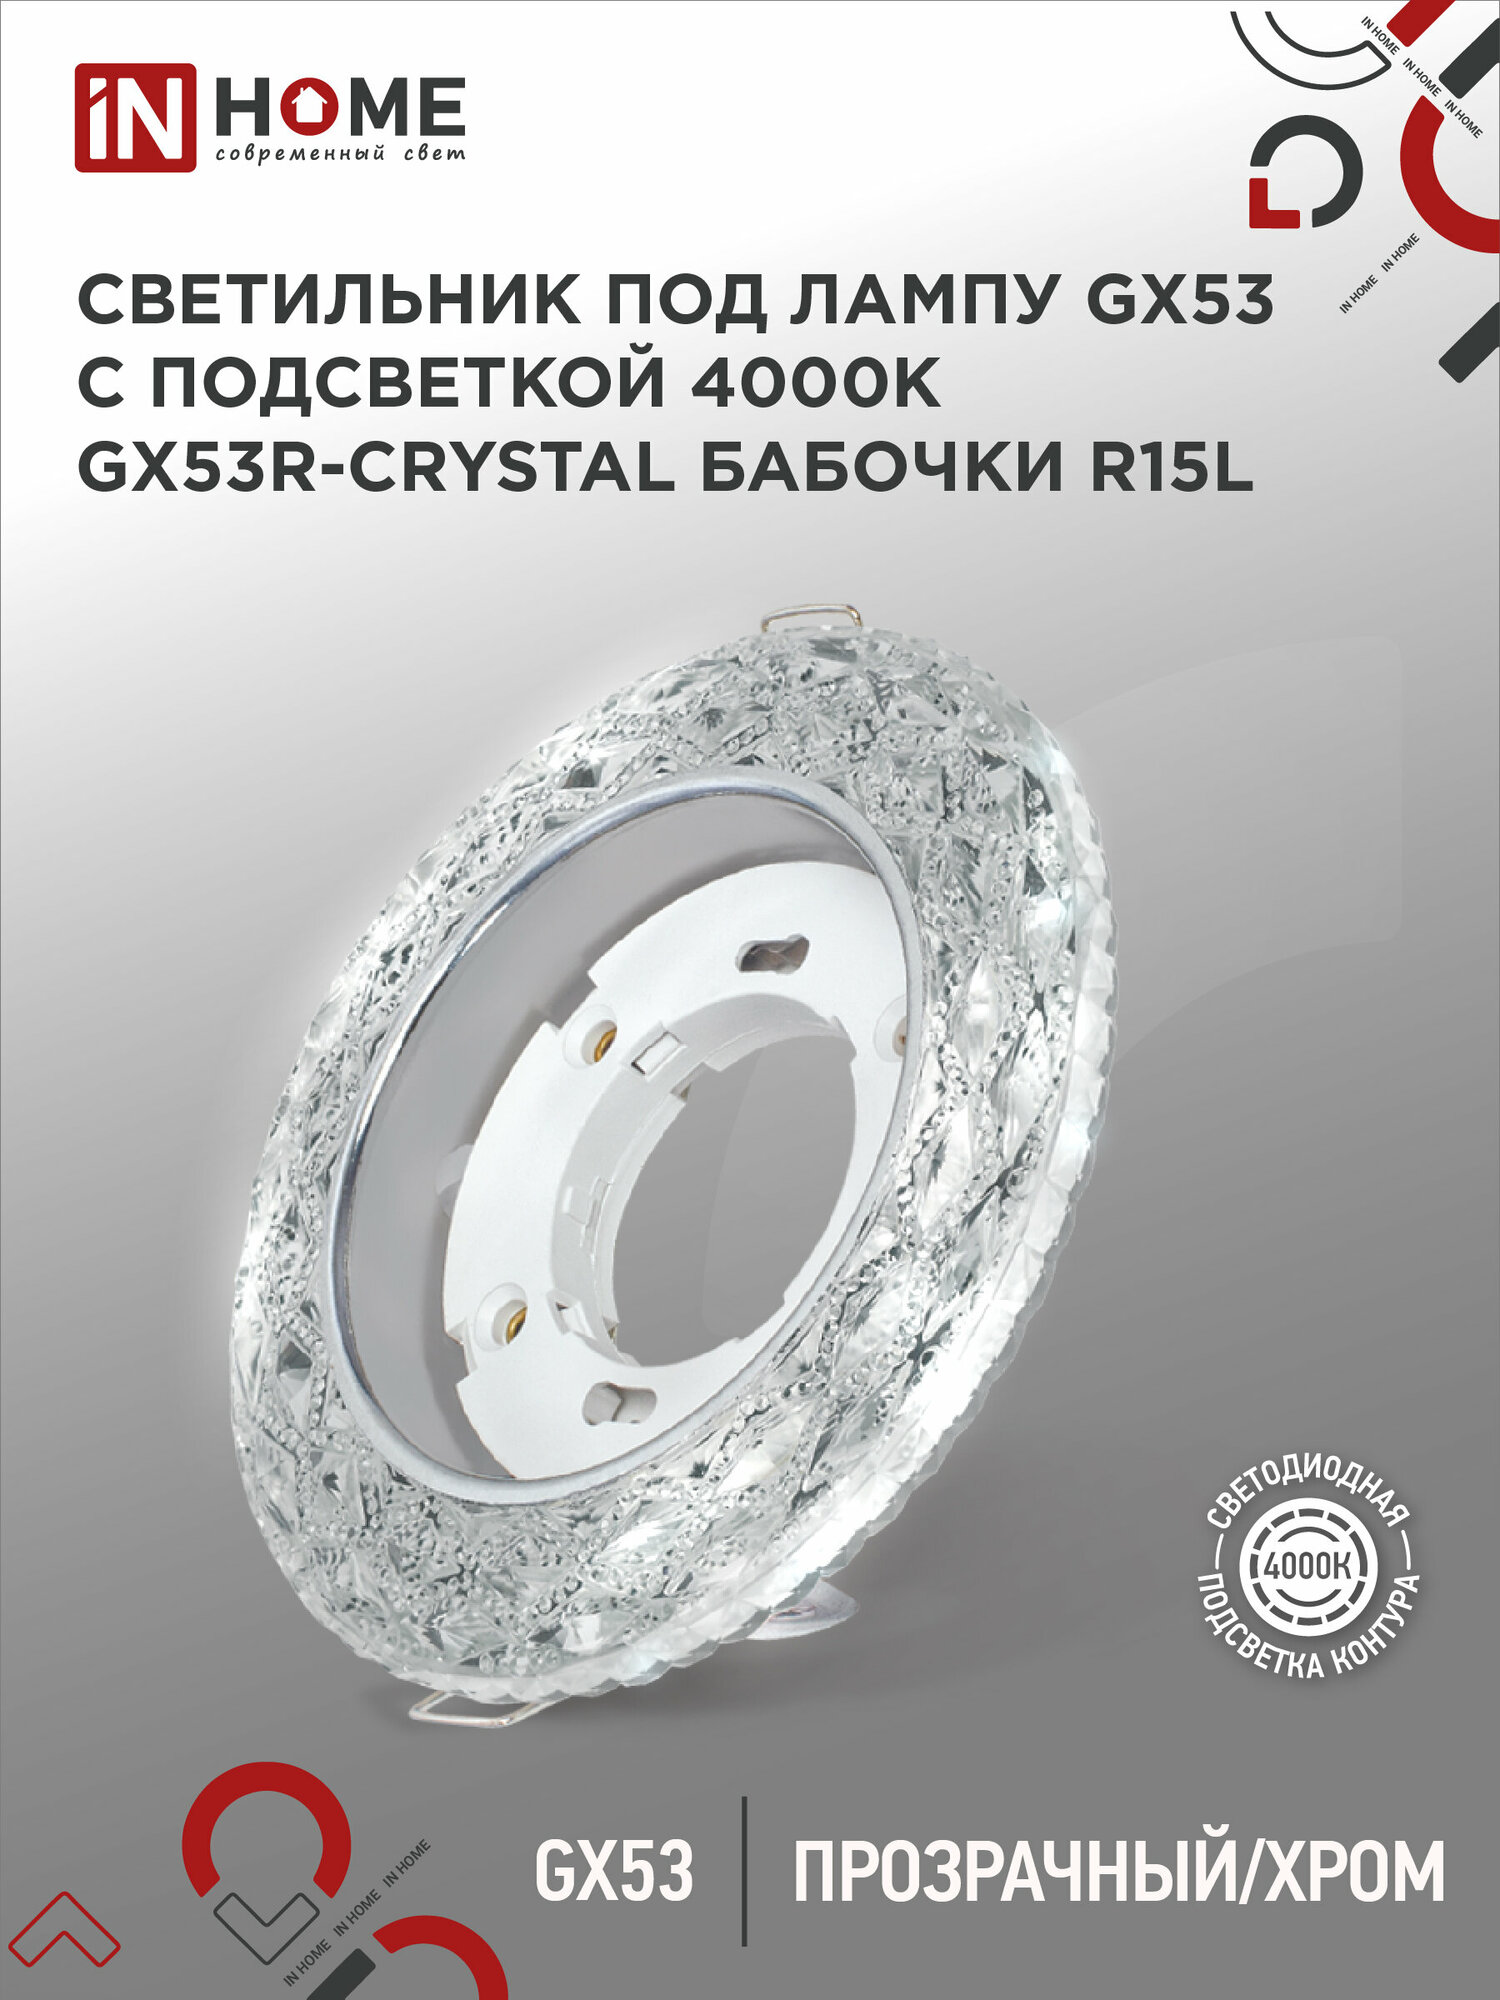 Светильник встраиваемый GX53R-crystal БАБОЧКИ-R15L с подсветкой 4К под GX53 Прозрачный/Хром IN HOME